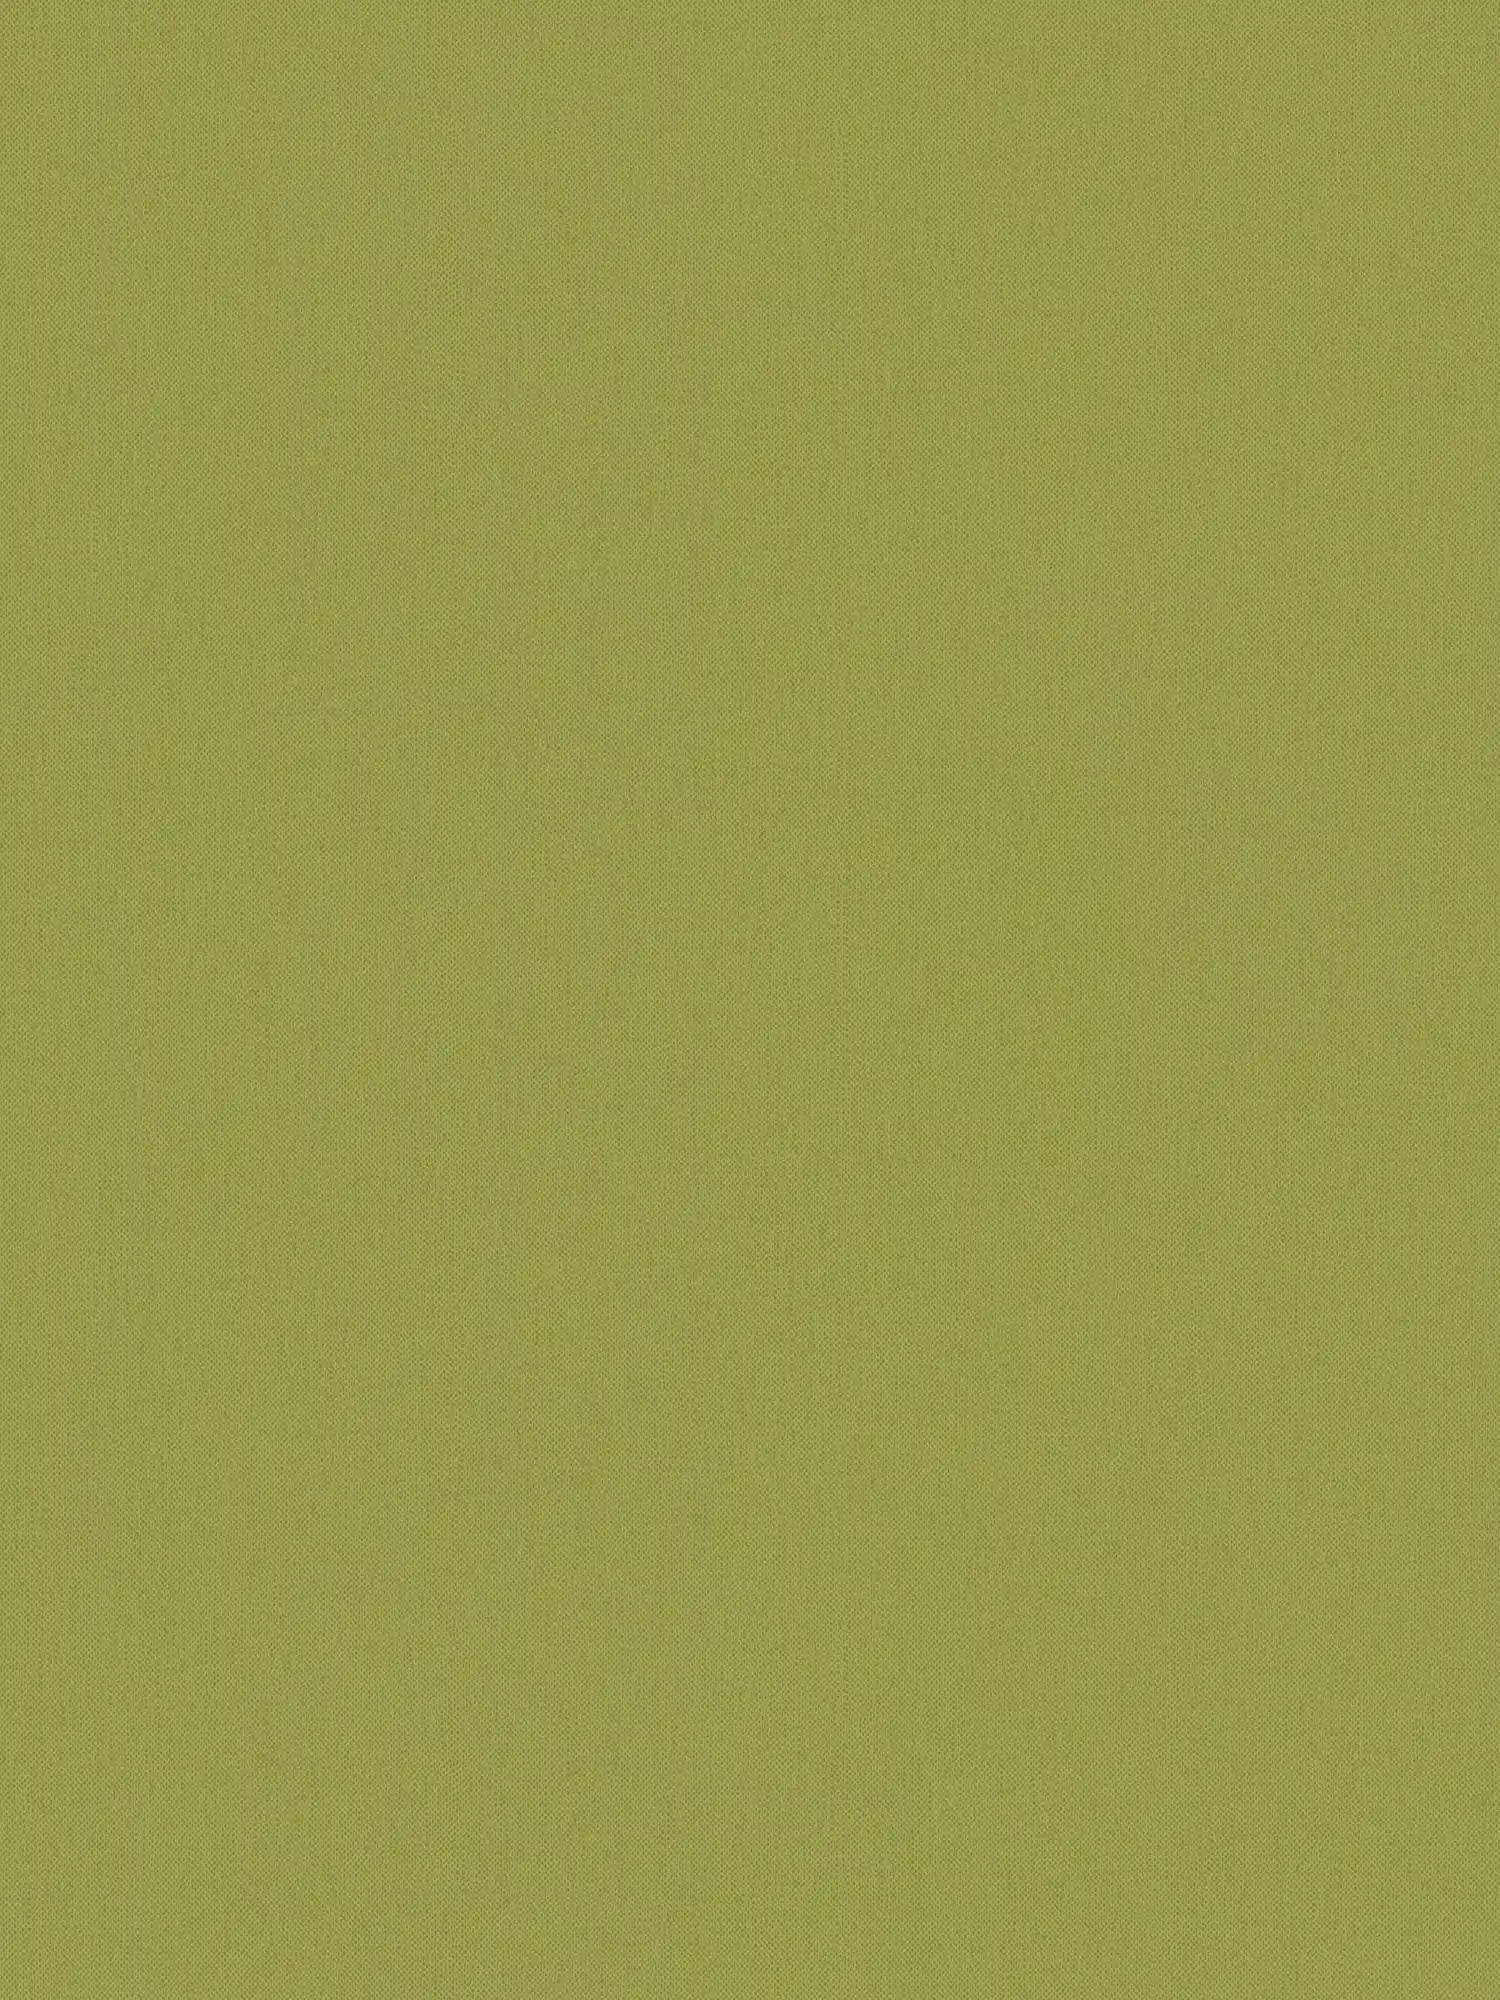 Carta da parati verde oliva con aspetto di lino e motivo strutturato - verde, giallo
